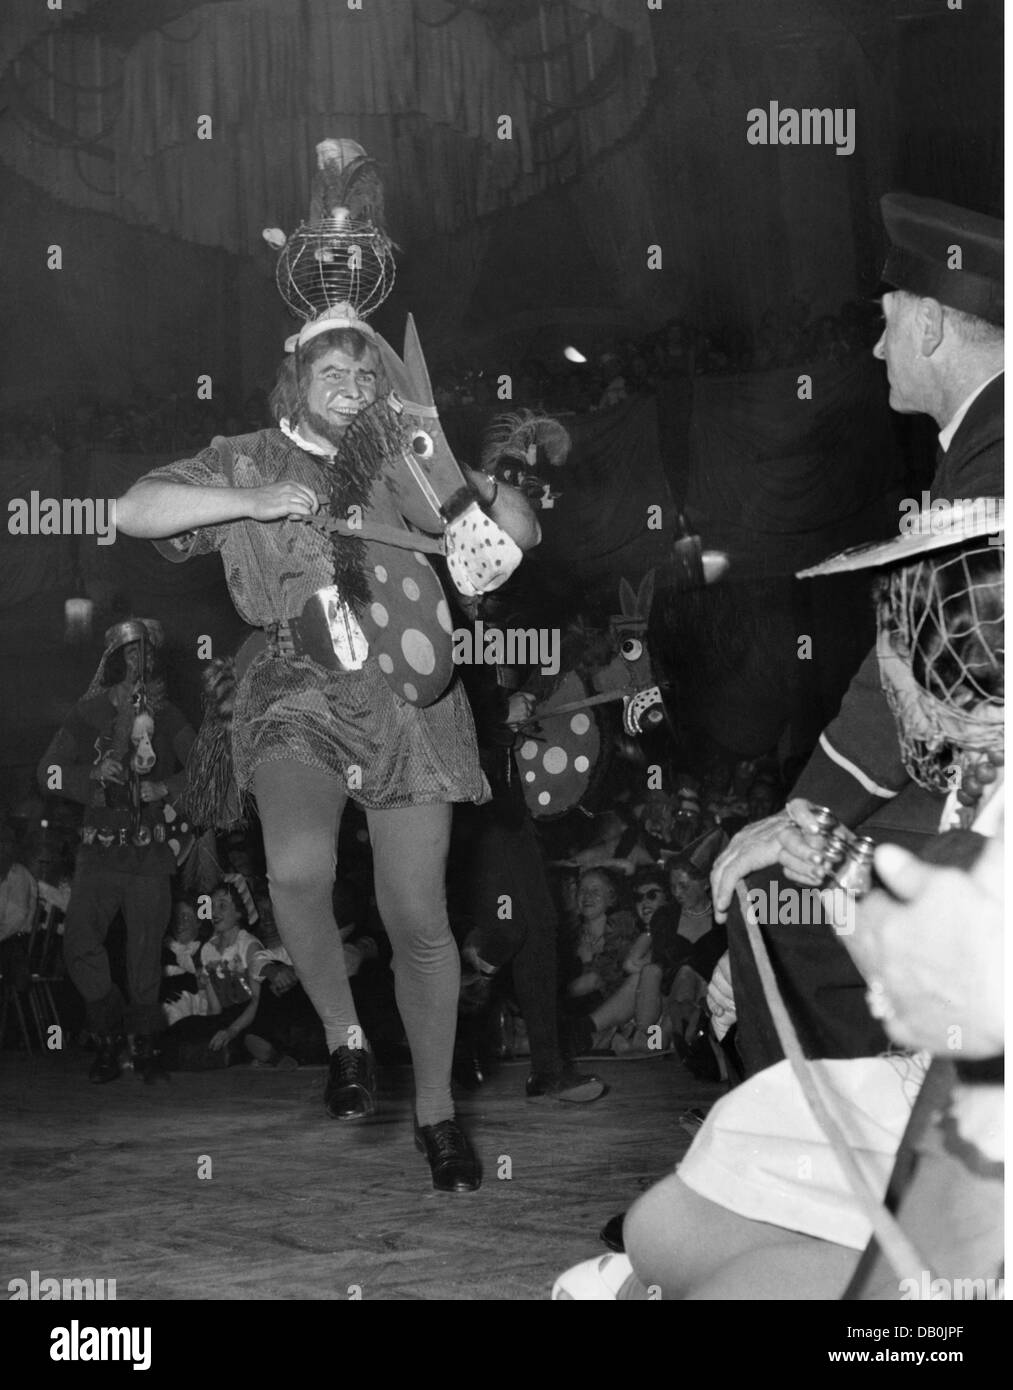 Festlichkeiten, Karneval, Fest der 'Deutschen Ritter', Ritter auf Holzpferd, Löwenbräukeller, München, 1957, Zusatz-Rechte-Clearenzen-nicht vorhanden Stockfoto